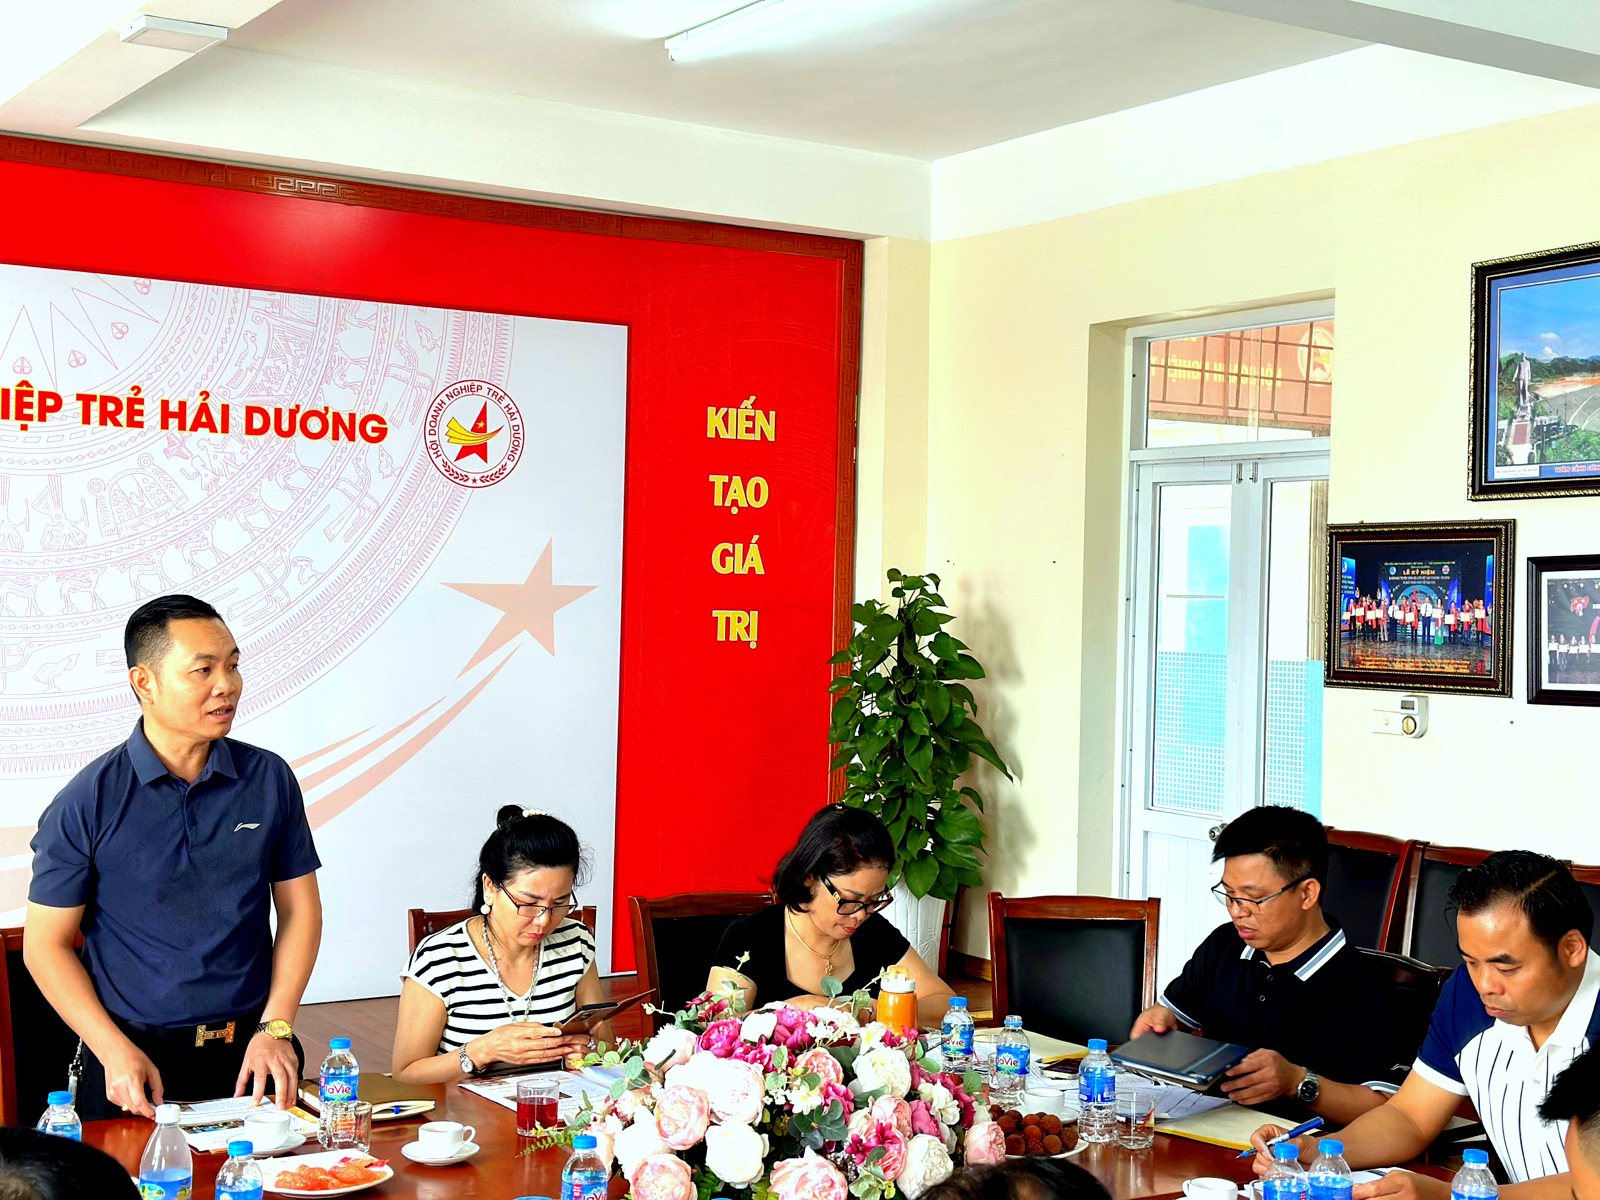 Ông Nguyễn Ngọc Tiến - Hội viên Hội Doanh nghiệp trẻ Hải Dương đóng góp ý kiến về chương trình xúc tiến thương mại du lịch sắp tới.